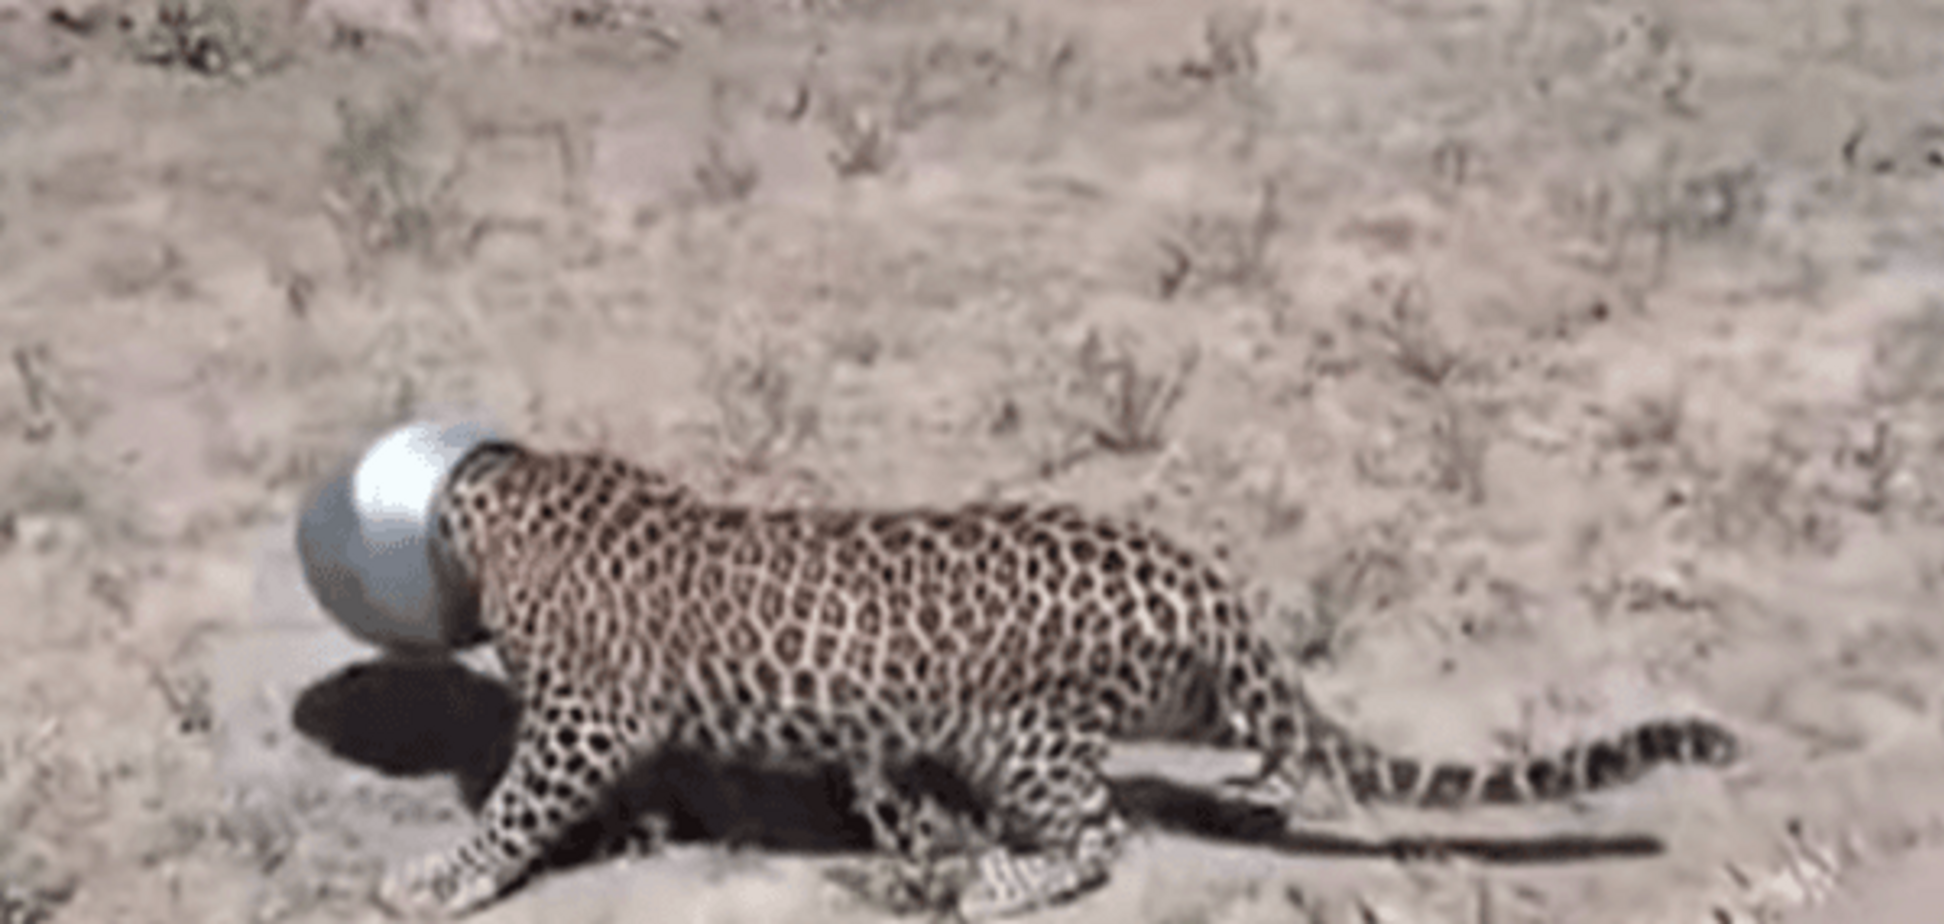 Цікавий леопард з бідоном на голові став зіркою мережі: відеофакт